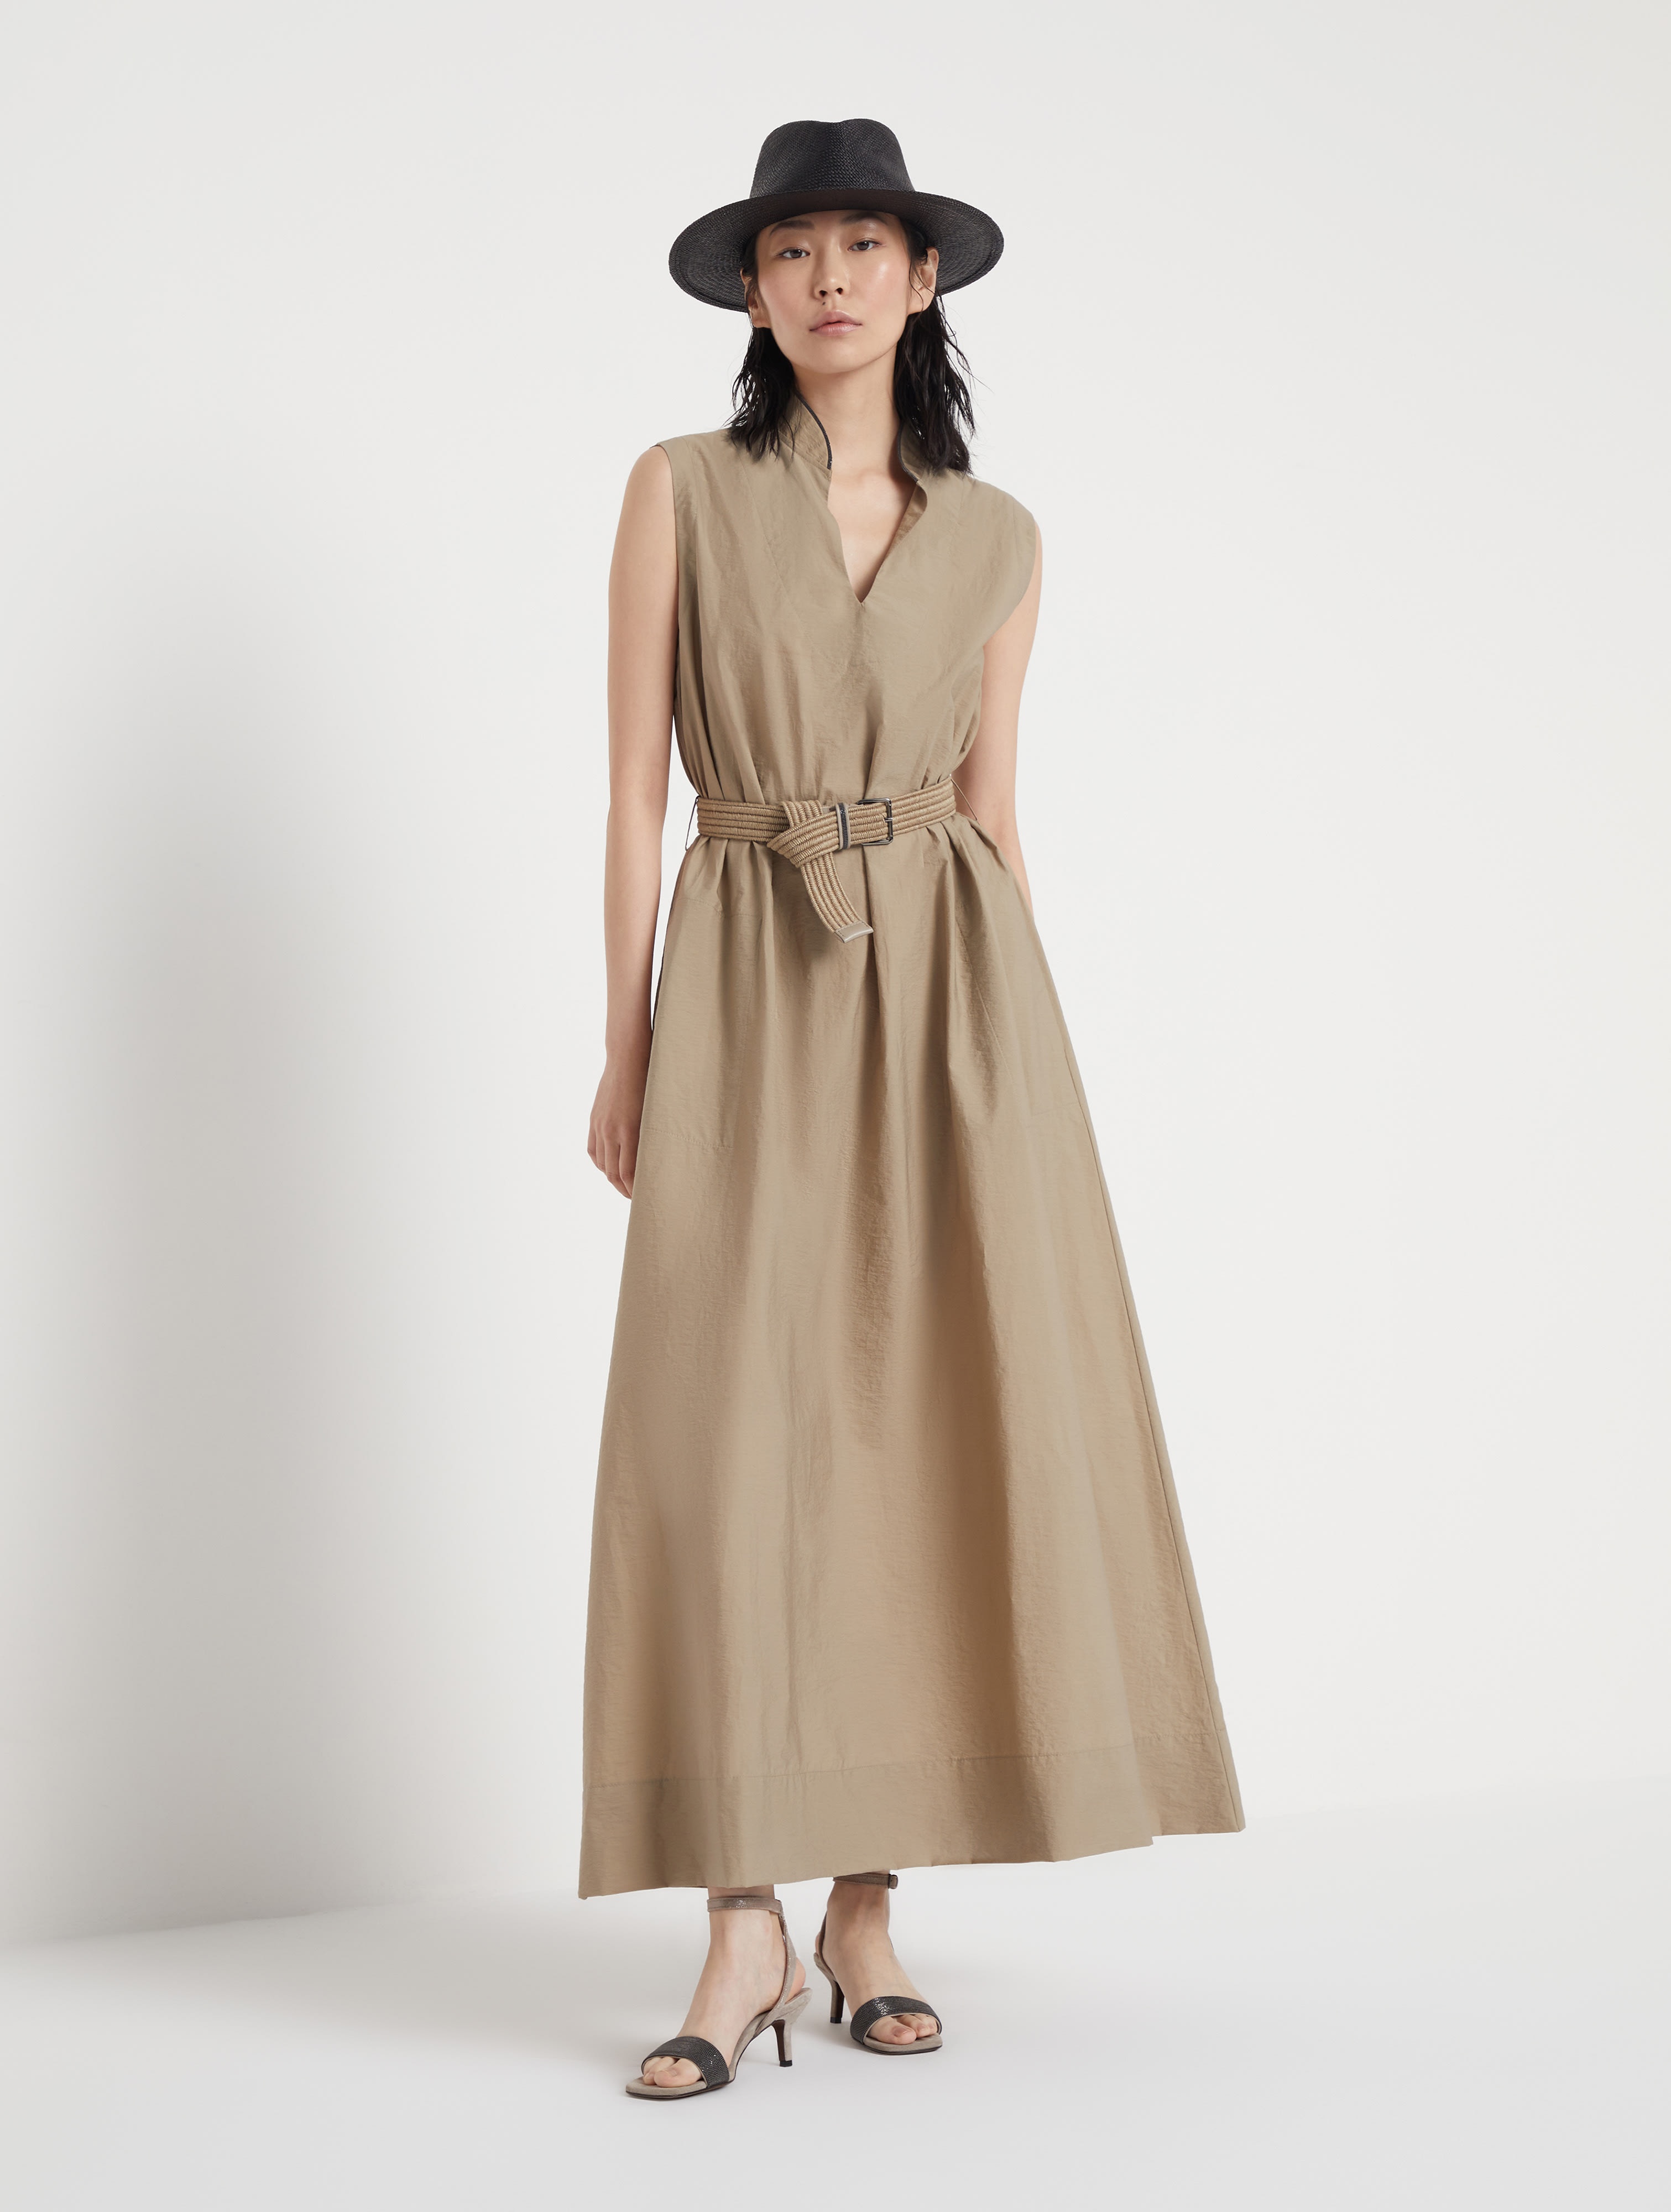 Techno cotton poplin dress with raffia belt and shiny trim - 5